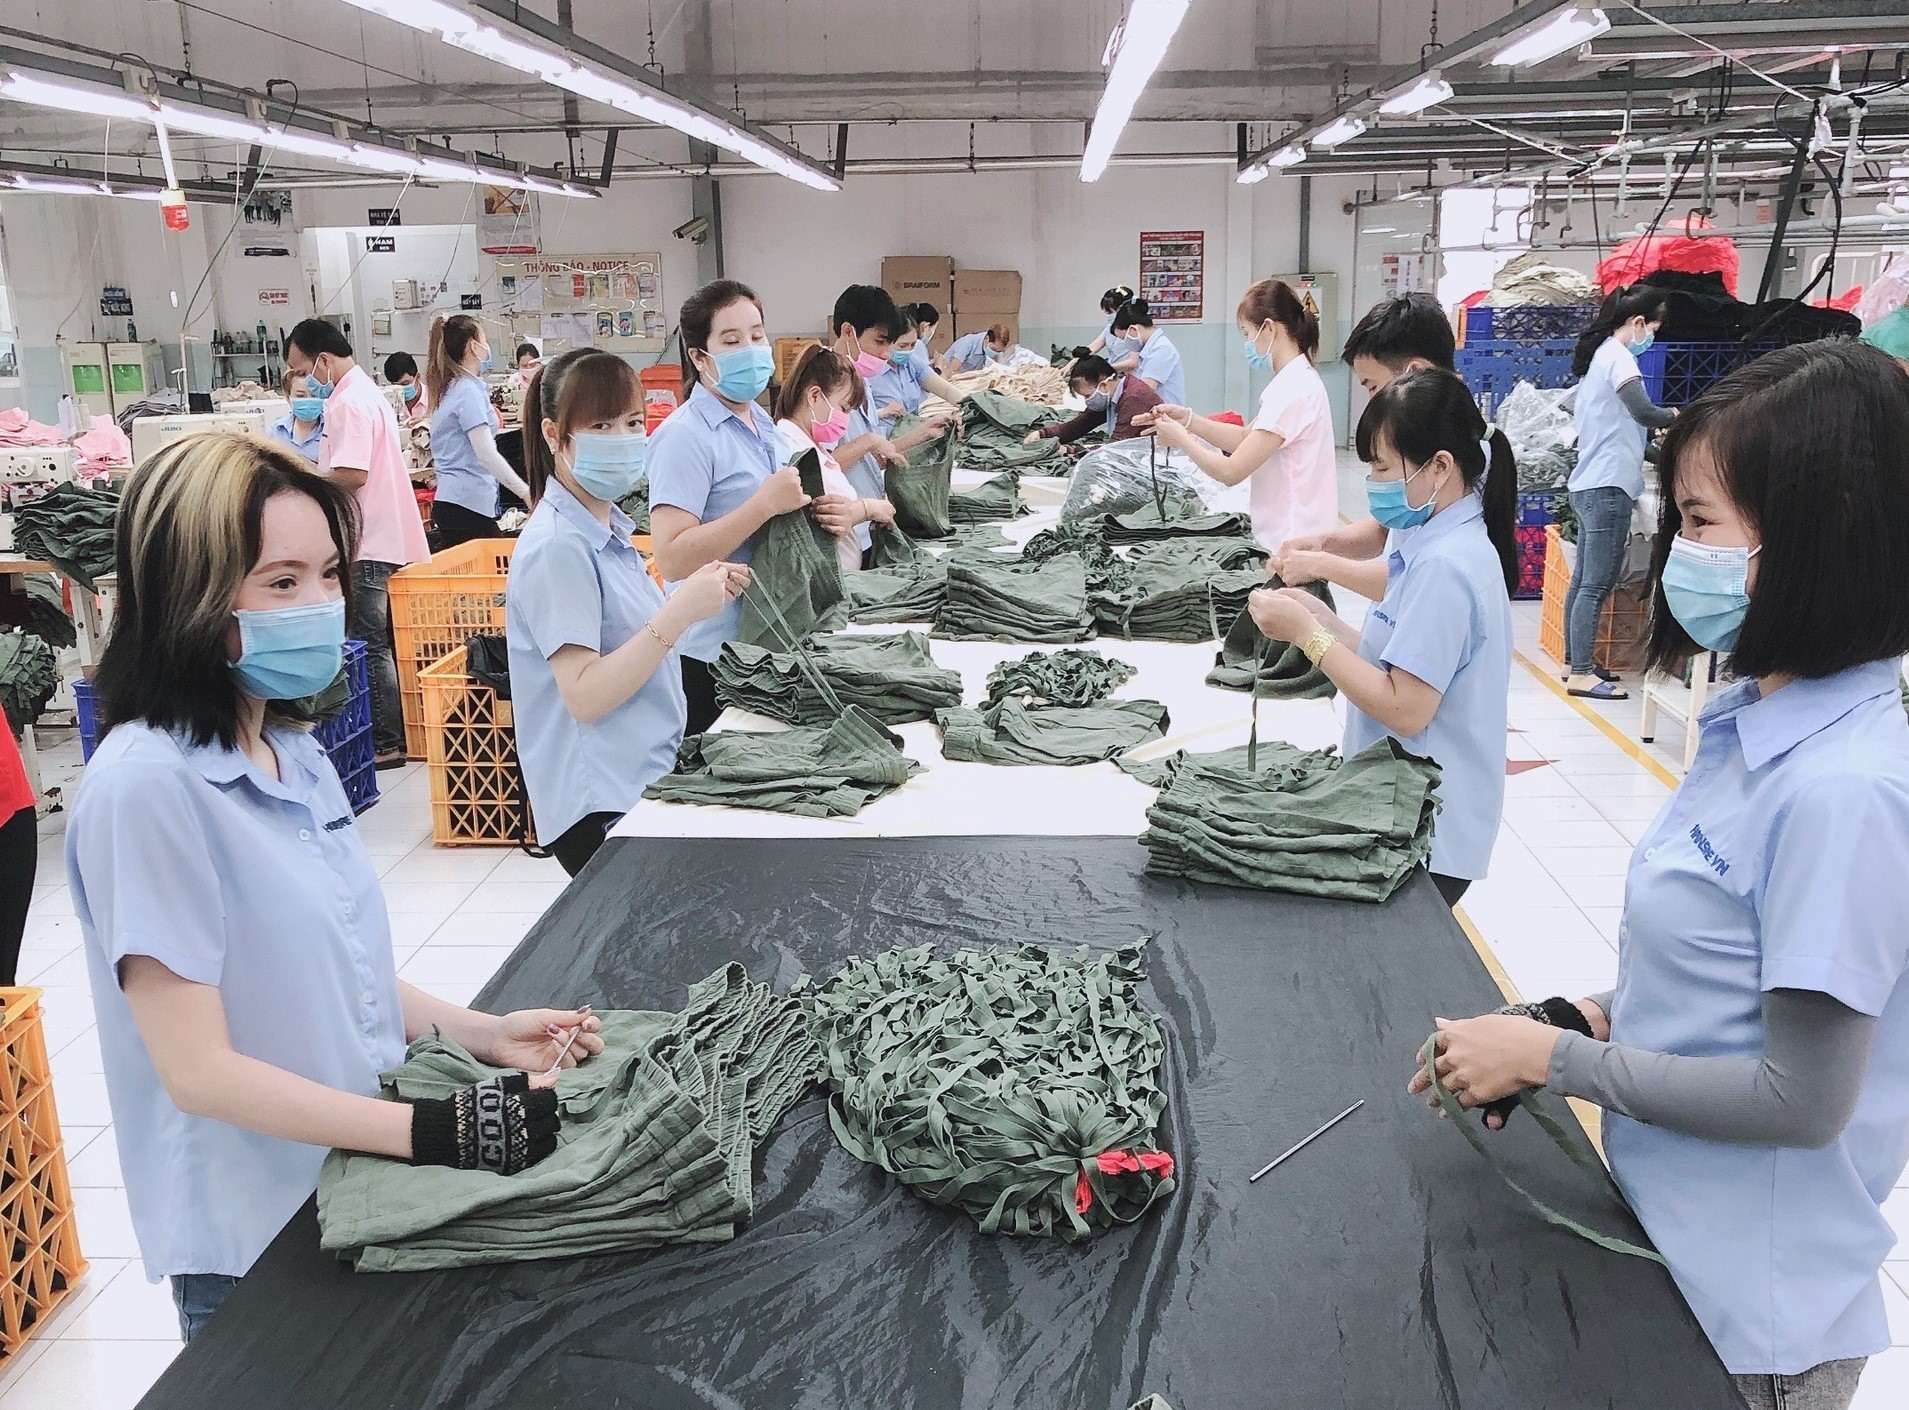 Trung Quốc mở cửa trở lại sẽ giúp các doanh nghiệp may mặc tiếp cận được với nguồn cung nguyên phụ liệu dệt may dễ dàng hơn và với chi phí tối ưu hơn. Ảnh: Đức Long